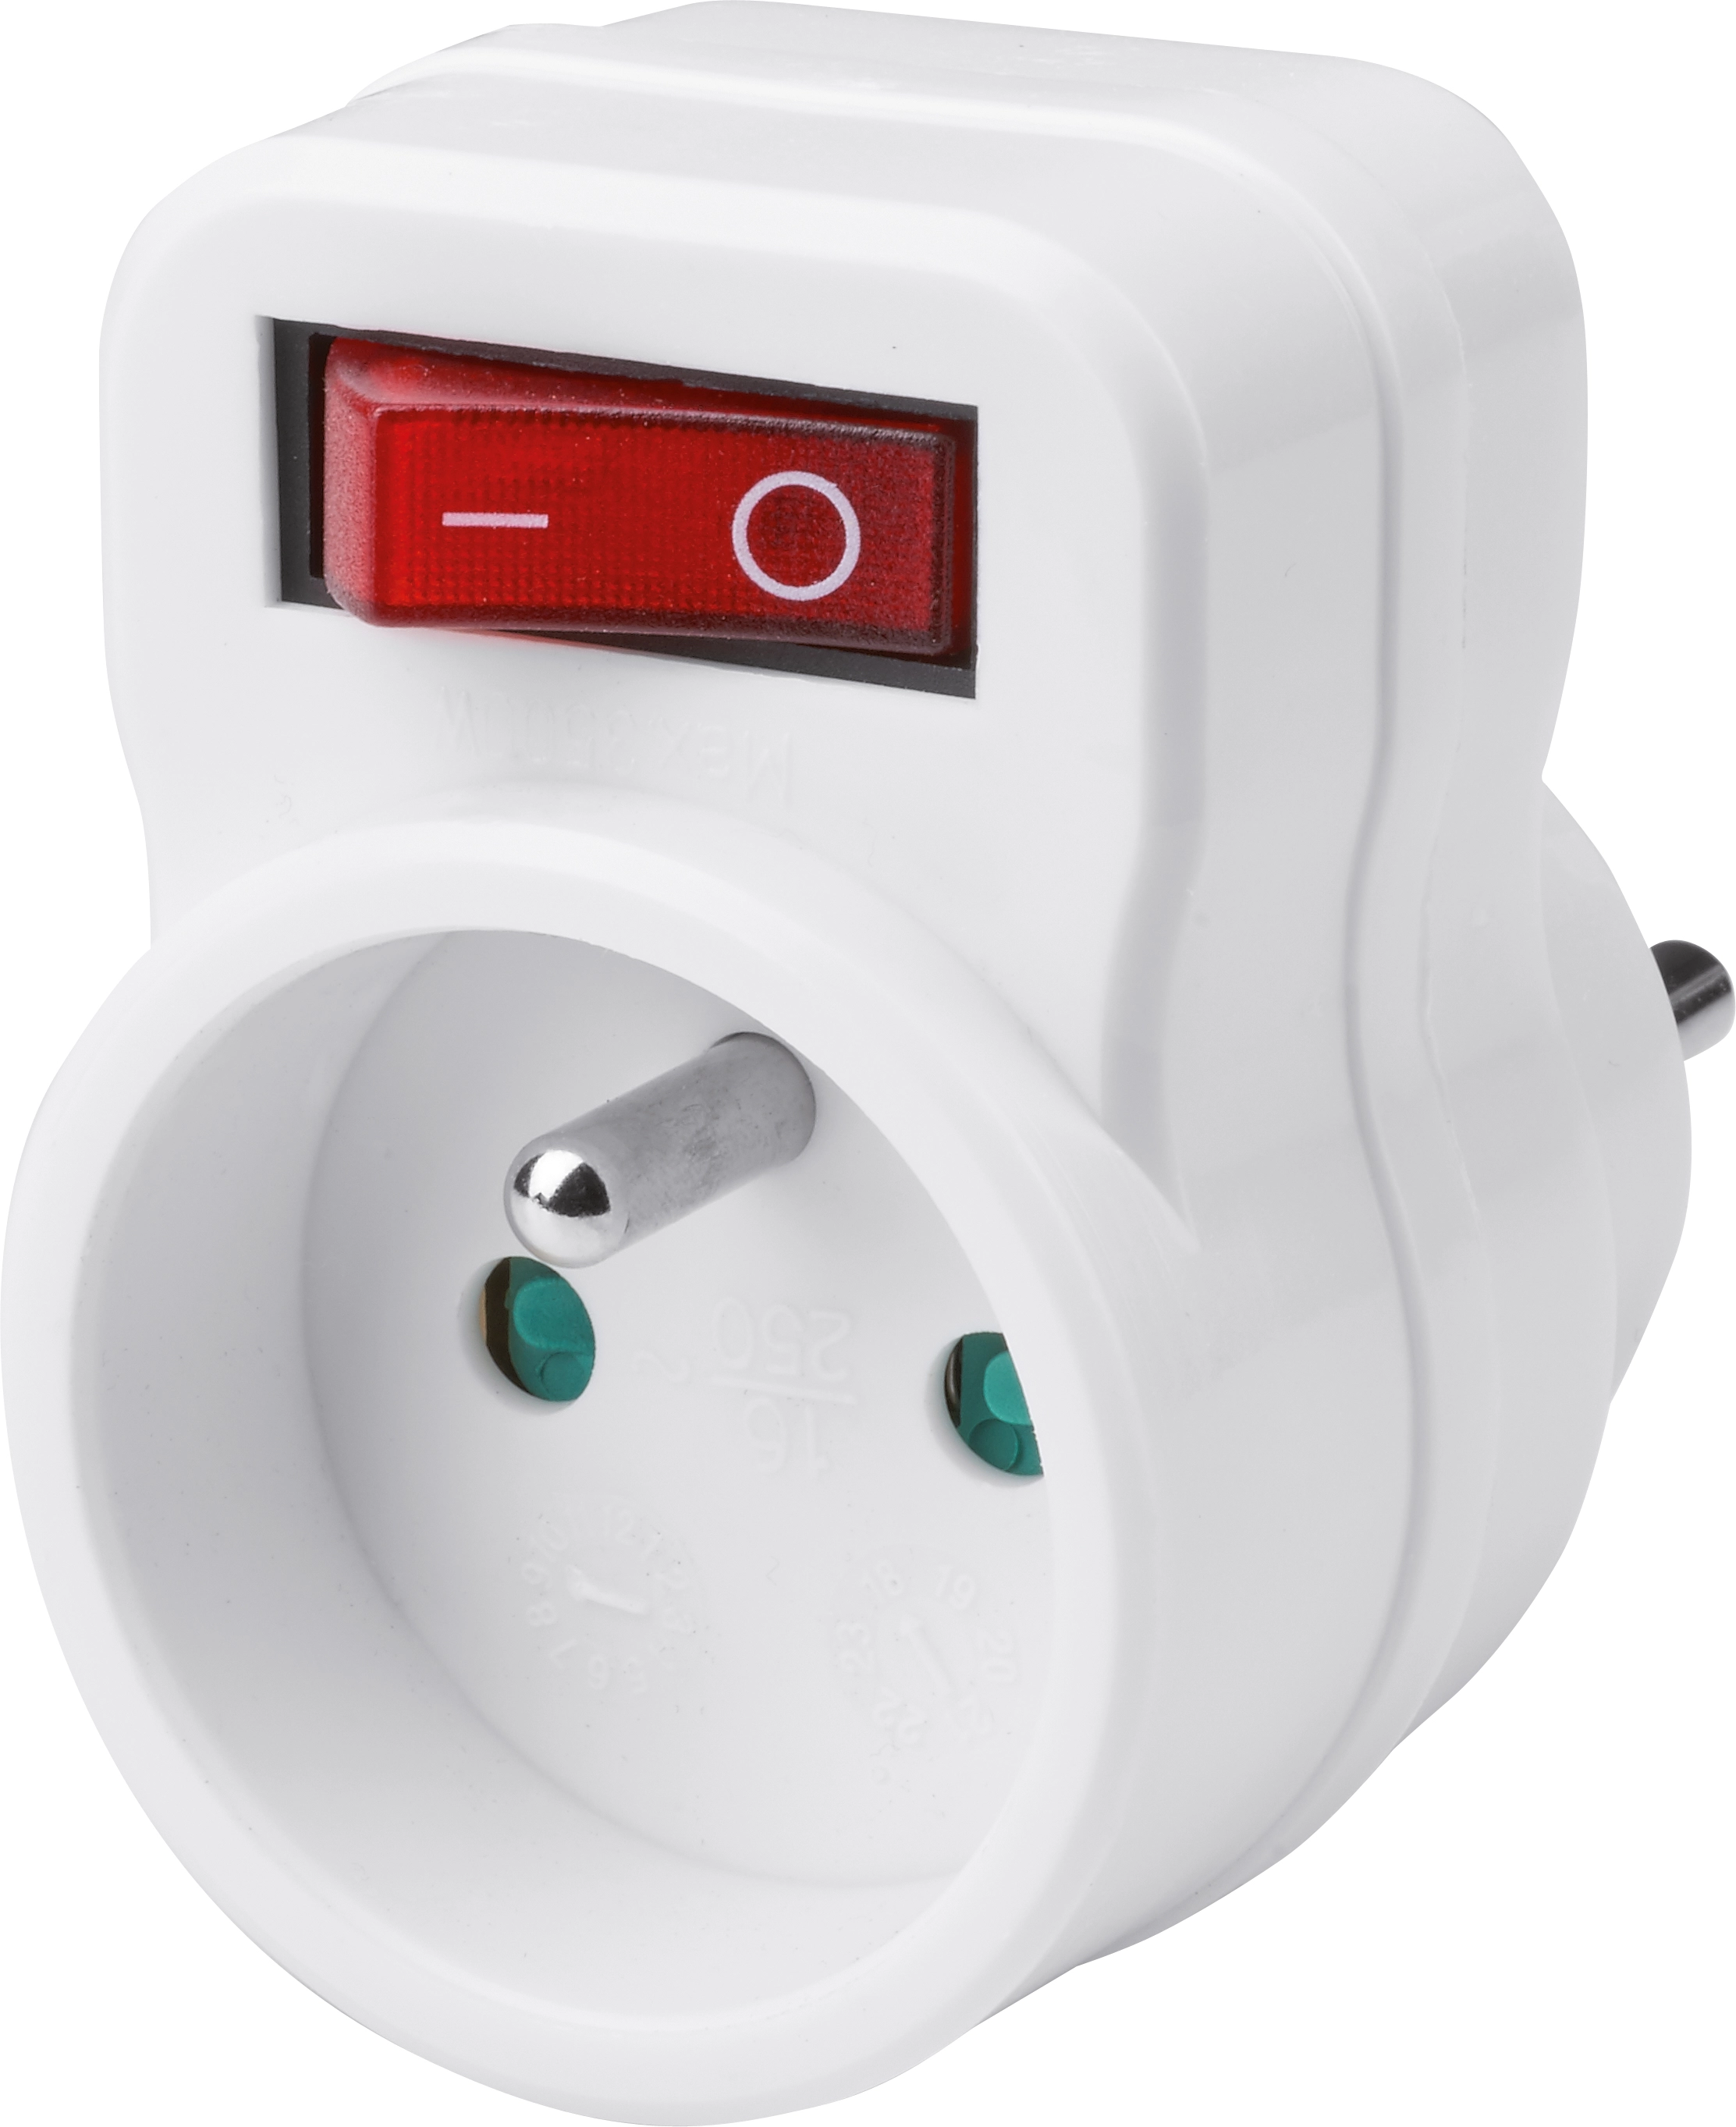 Schutzkontaktstecker-Adapter mit Schalter PVC Weiß kaufen bei OBI